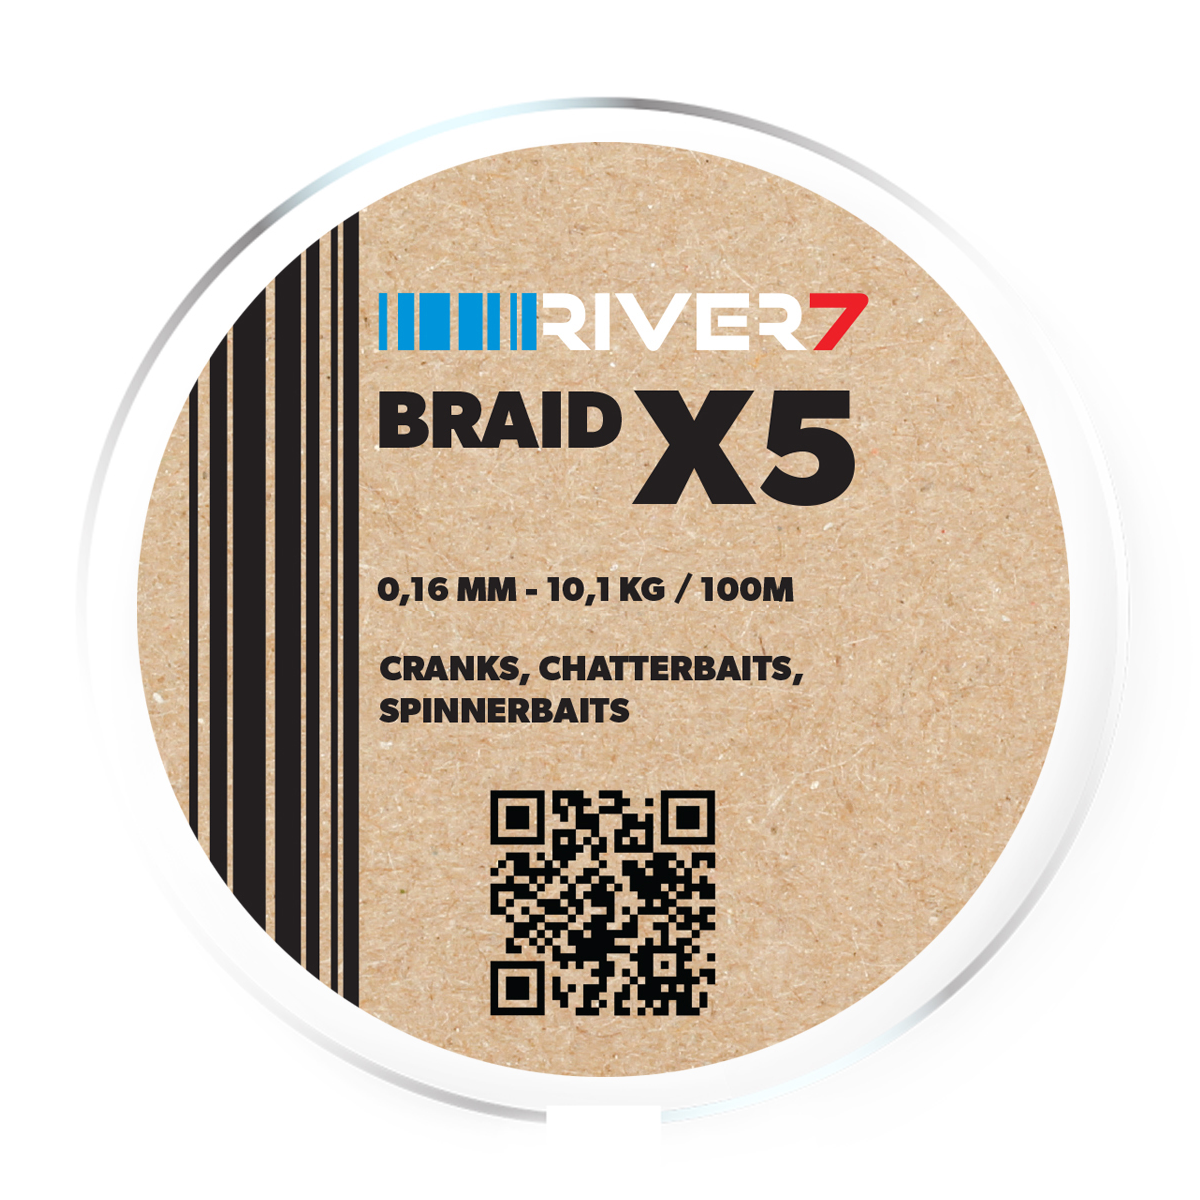 River7 X5 Braid -  0.16 mm